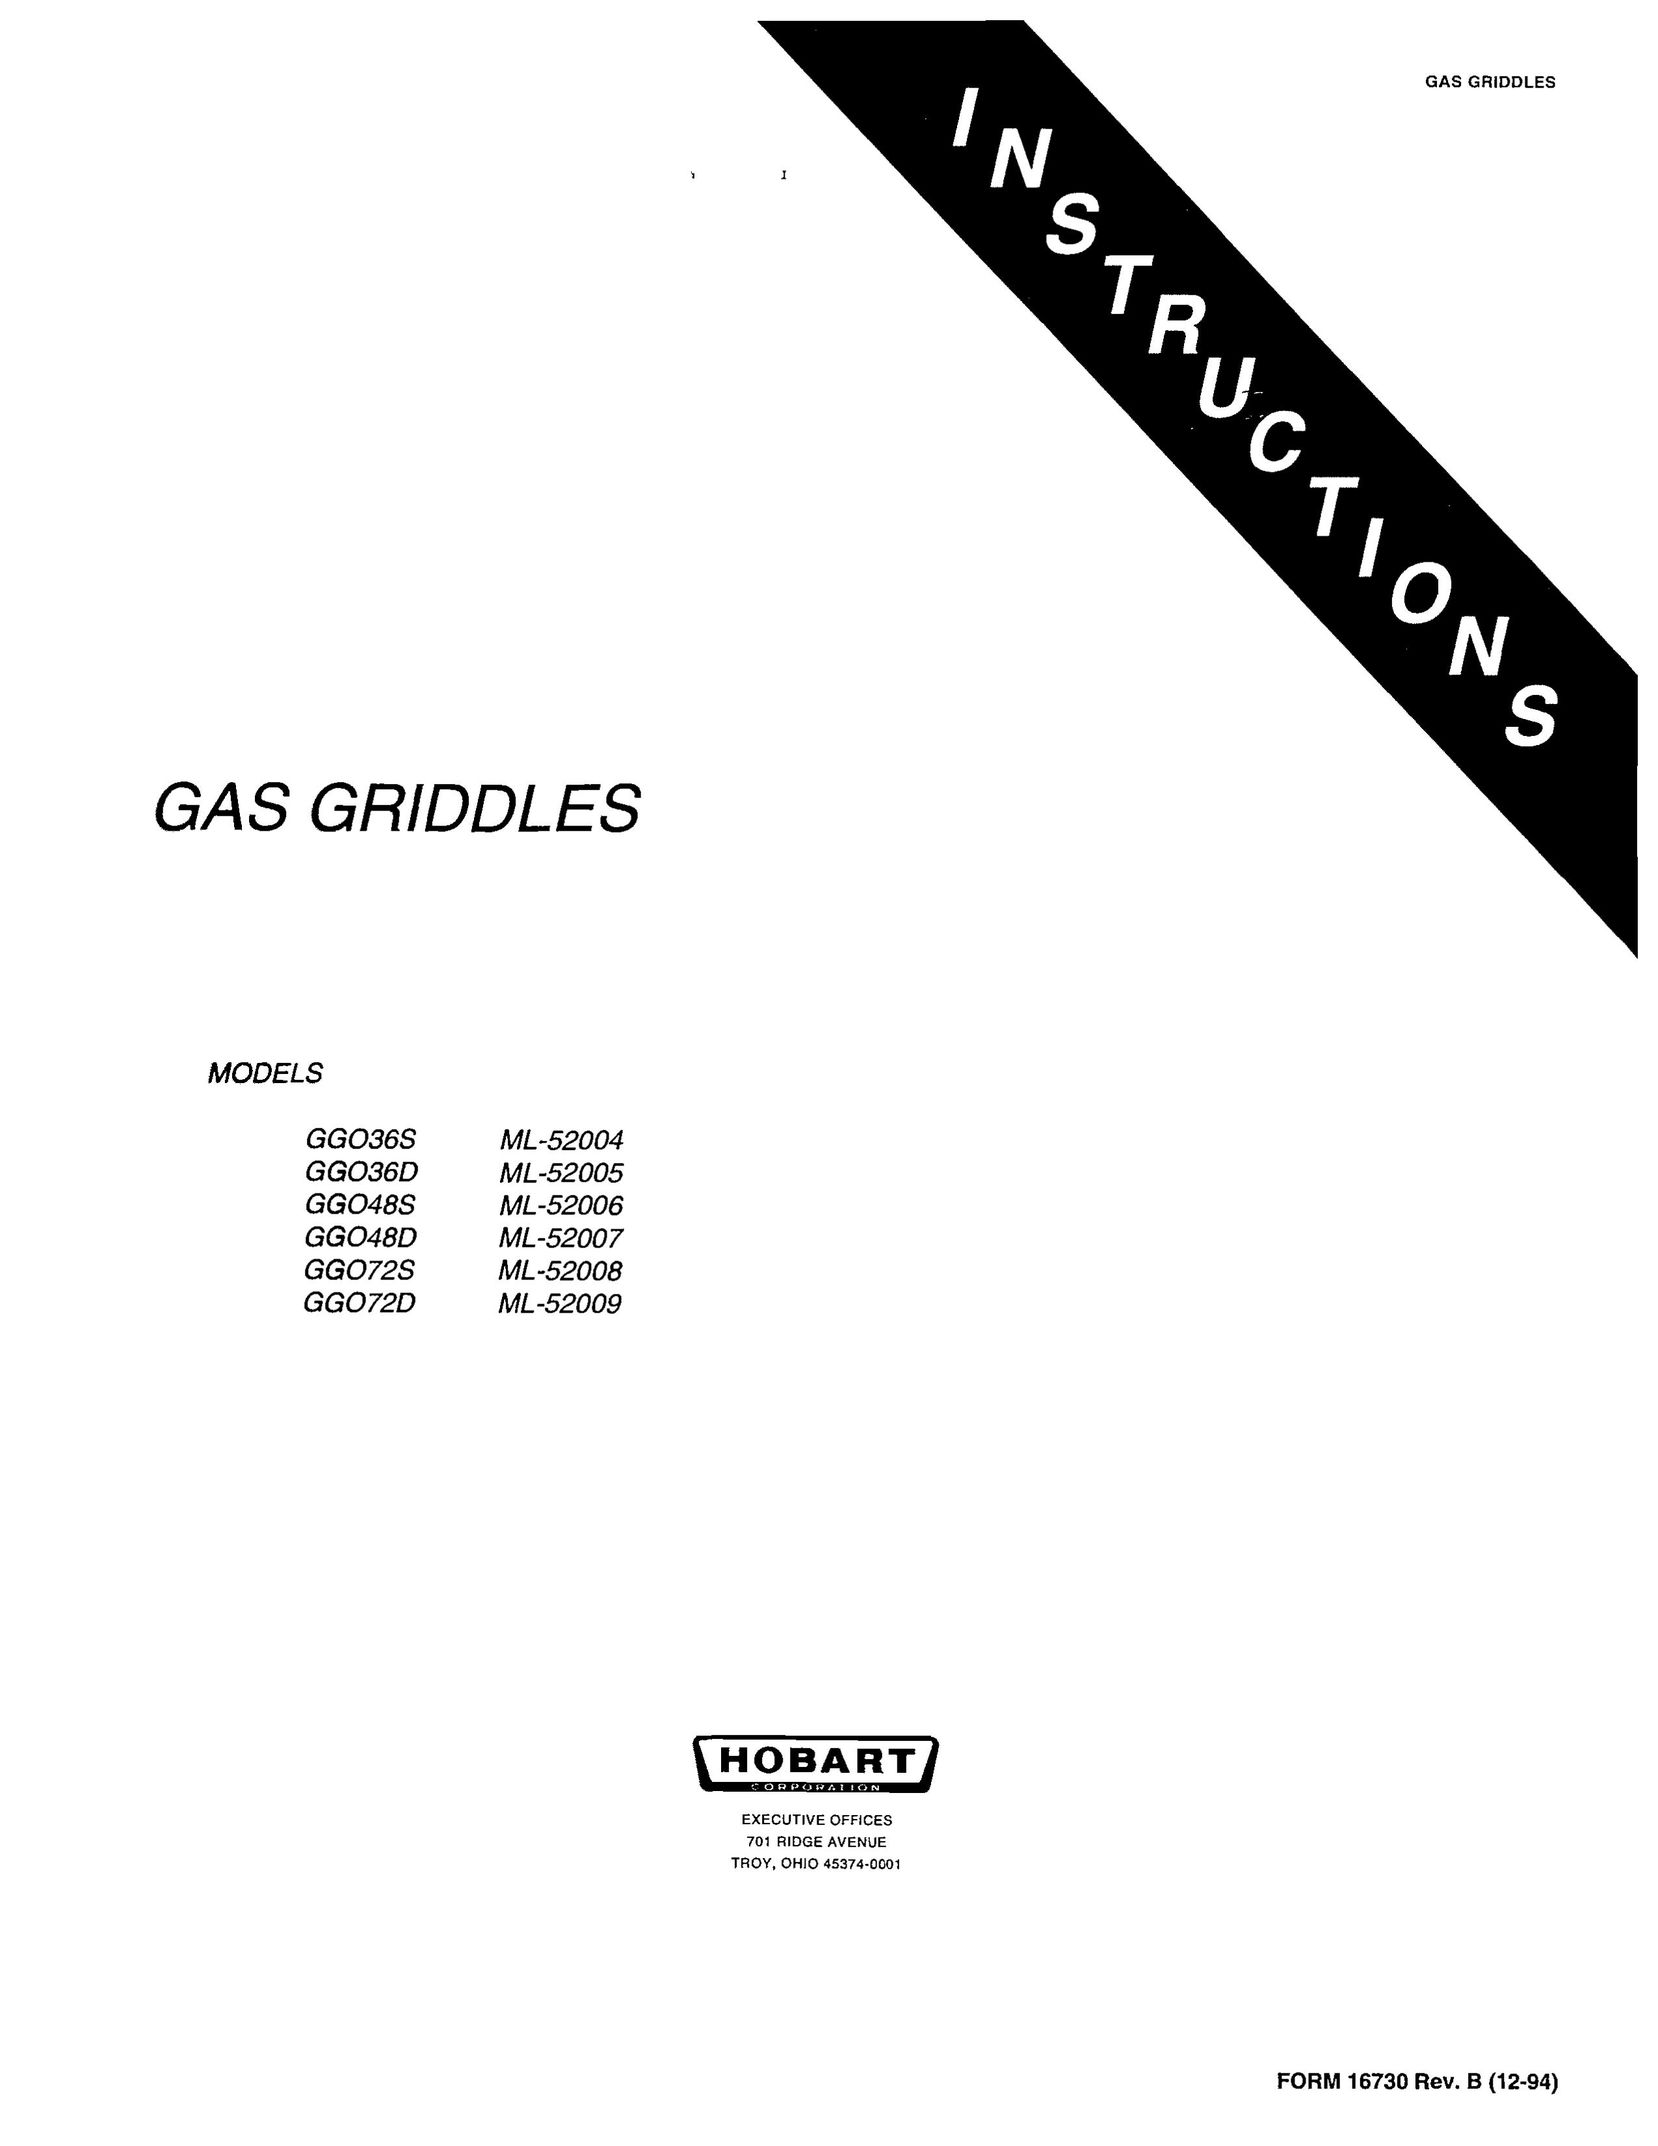 Hobart GGO36D Griddle User Manual